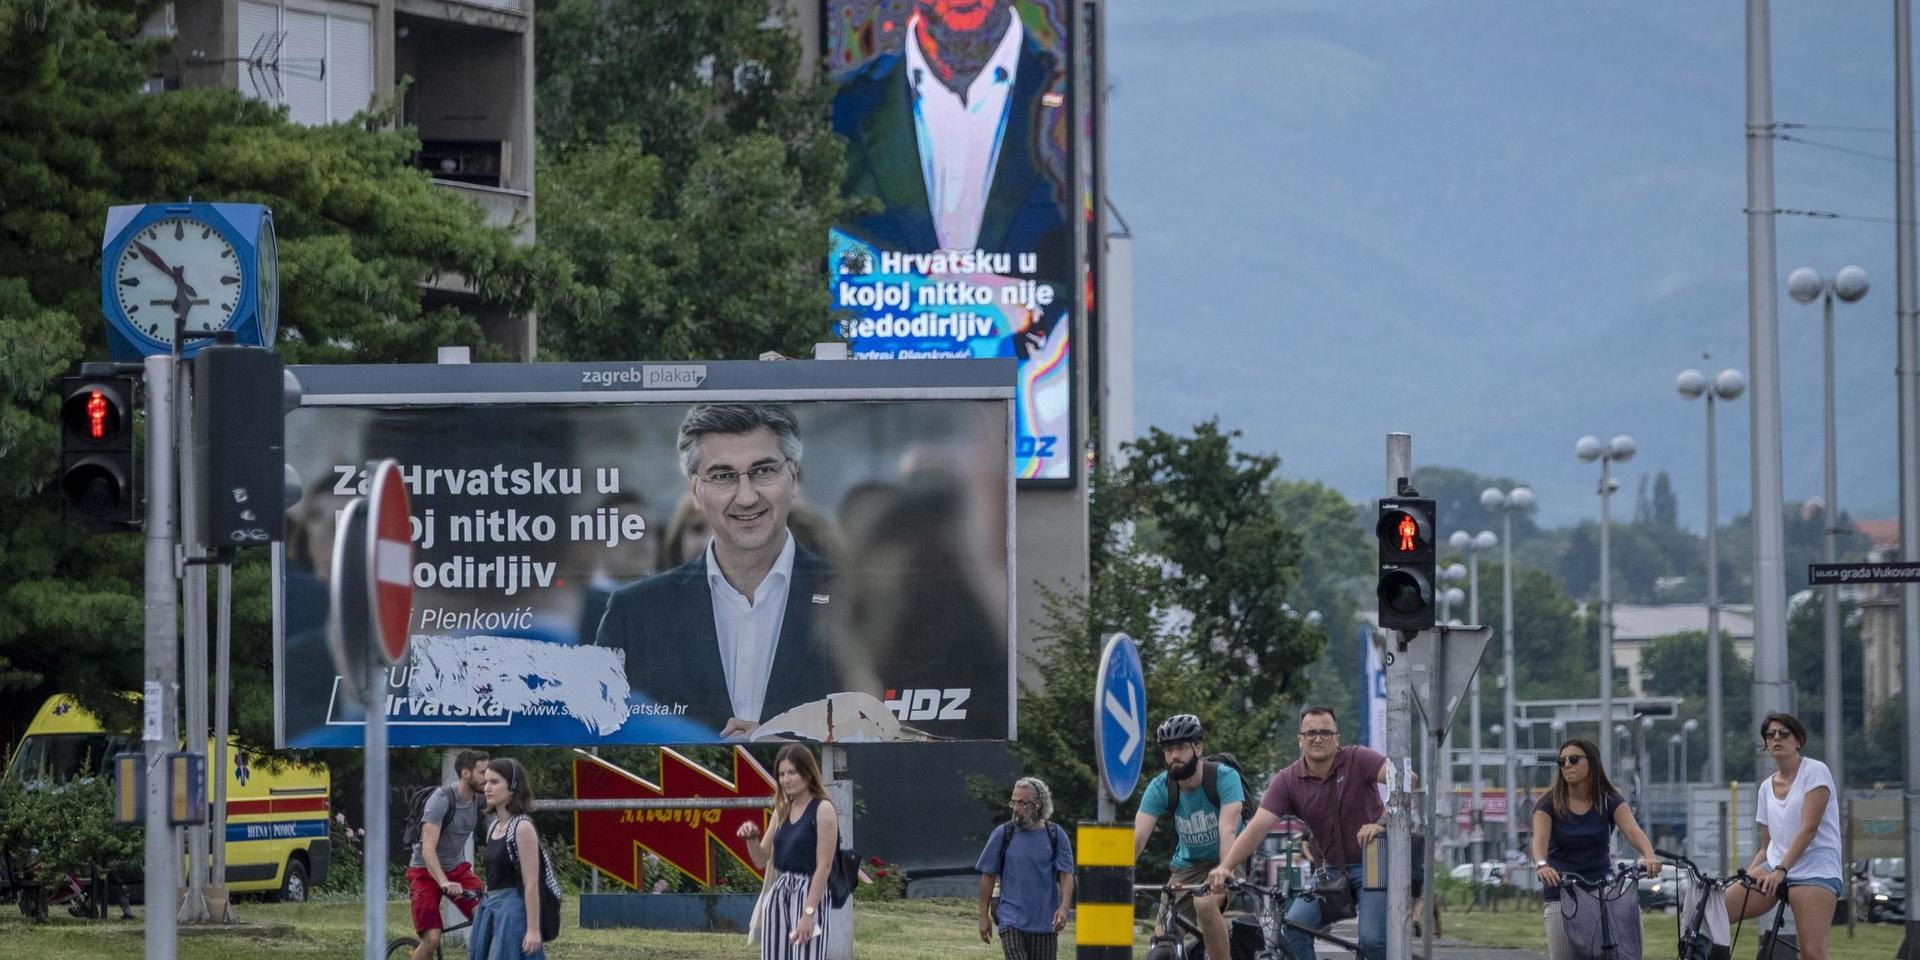 Zagreb-bor går förbi premiärminister Andrej Plenkovićs valaffischer.